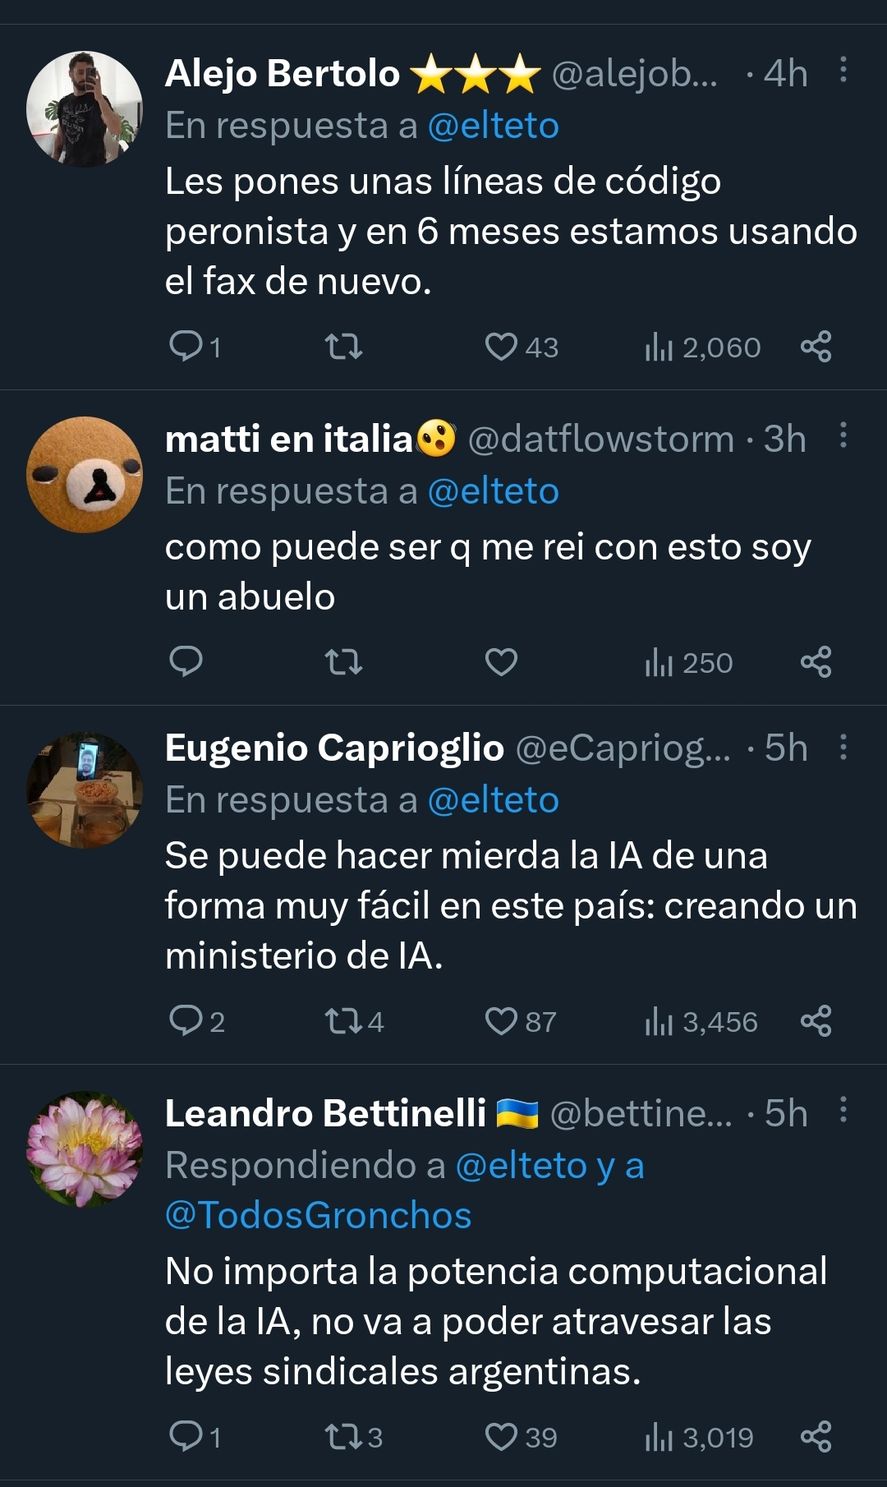 Los graciosos comentarios de Twitter acerca de la loca idea de crear un sindicato de Inteligencia Artificial a "la argentina" 